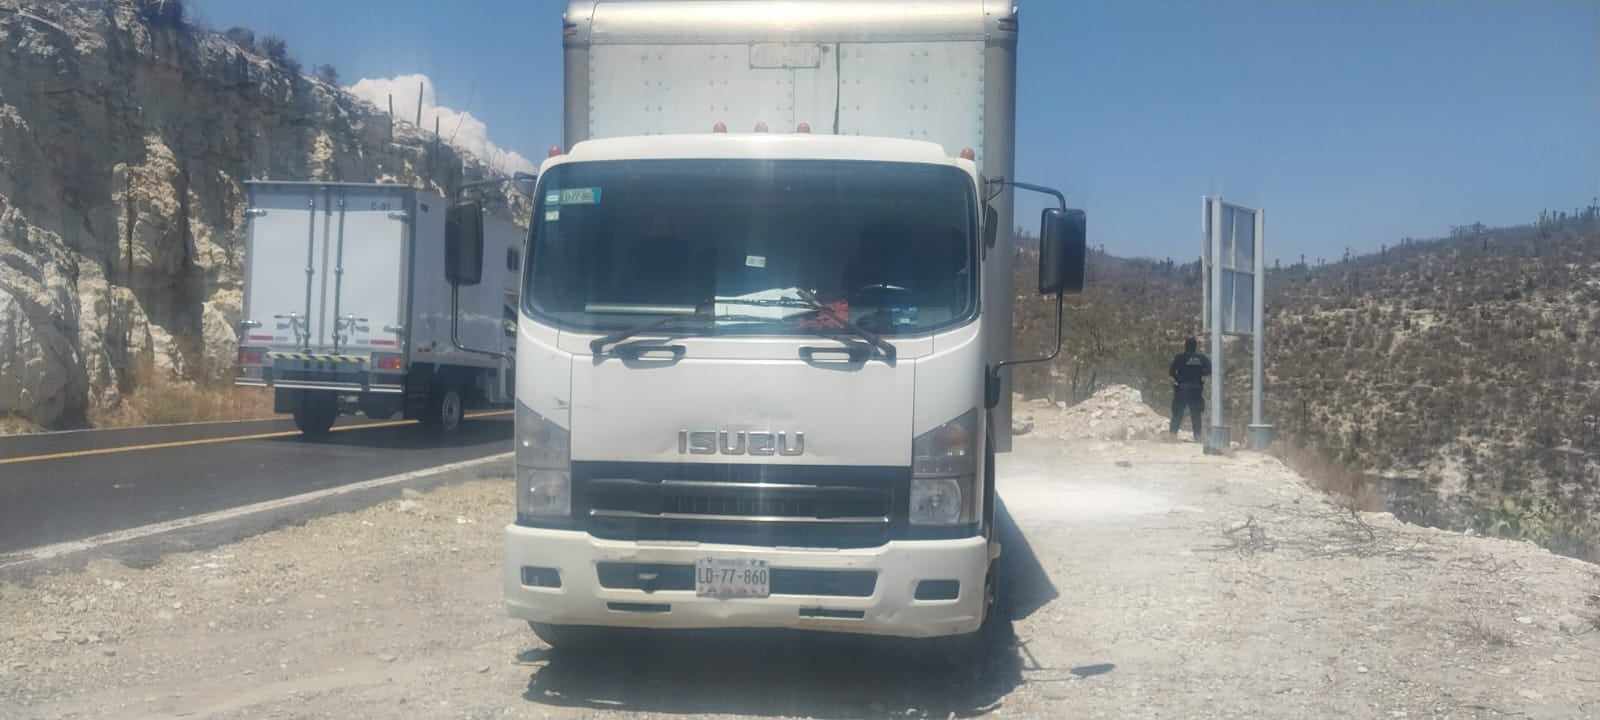 Localizan camión abandonado con predenuncia en carretera Tehuacán-Huajuapan